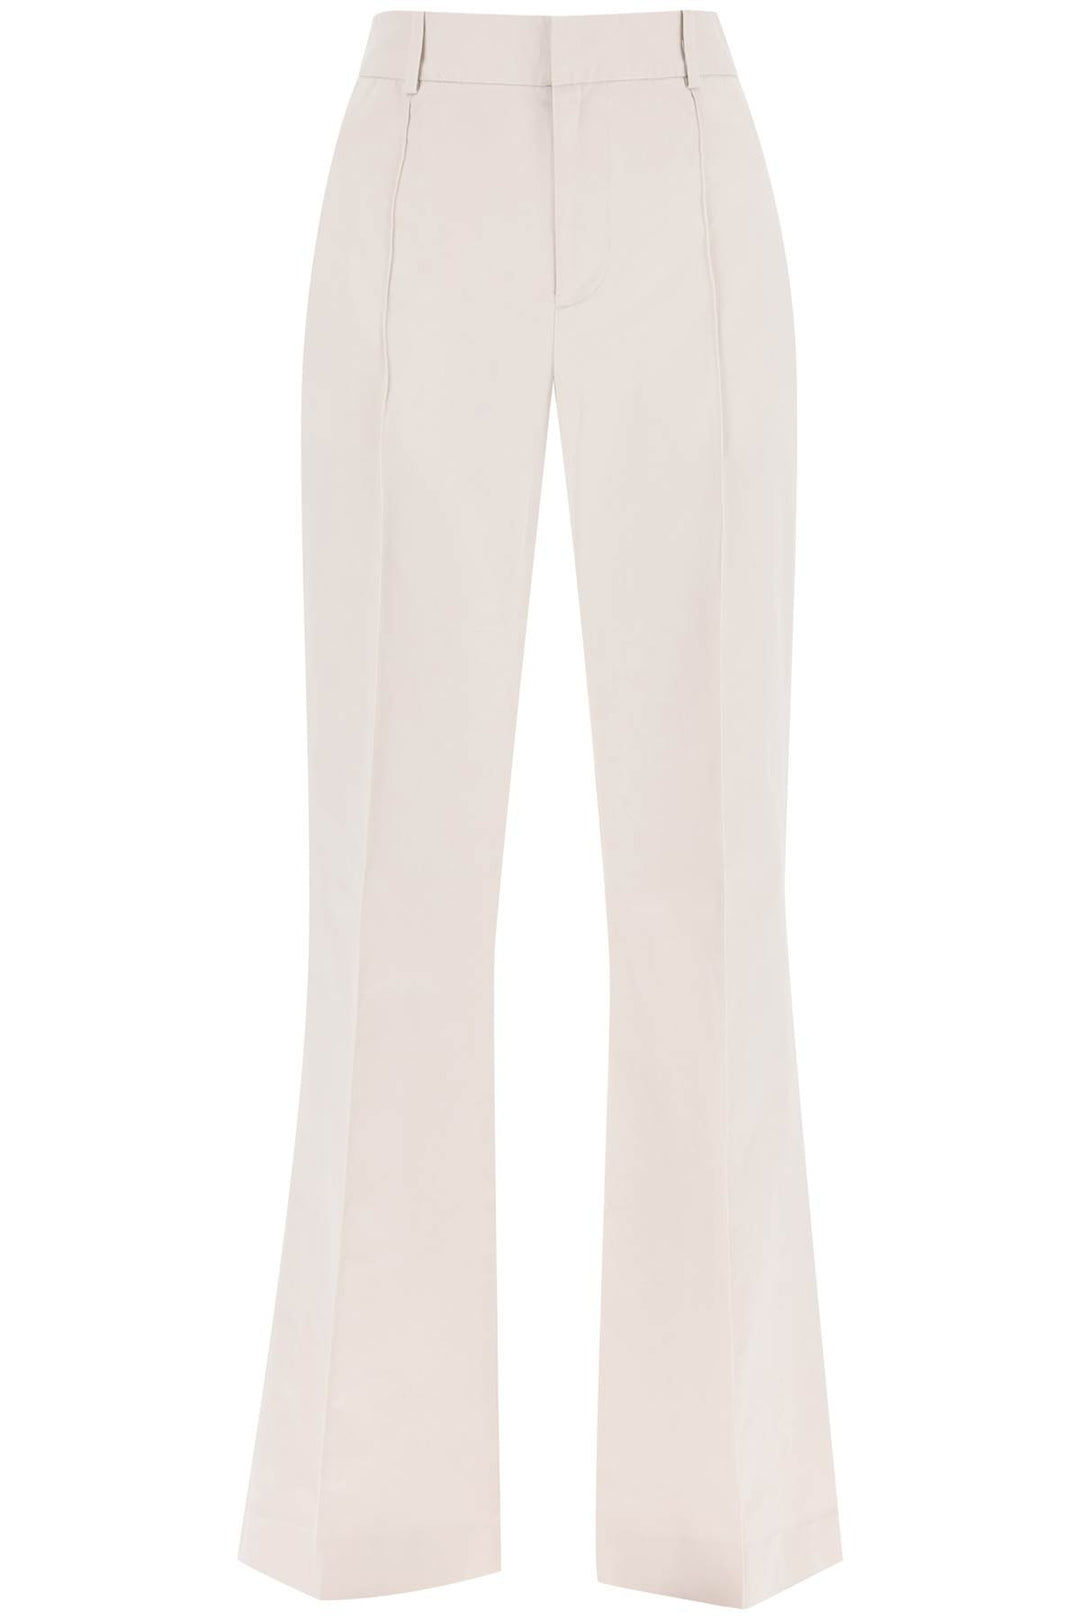 Polo Ralph Lauren Cotton Bootcut Pants   White